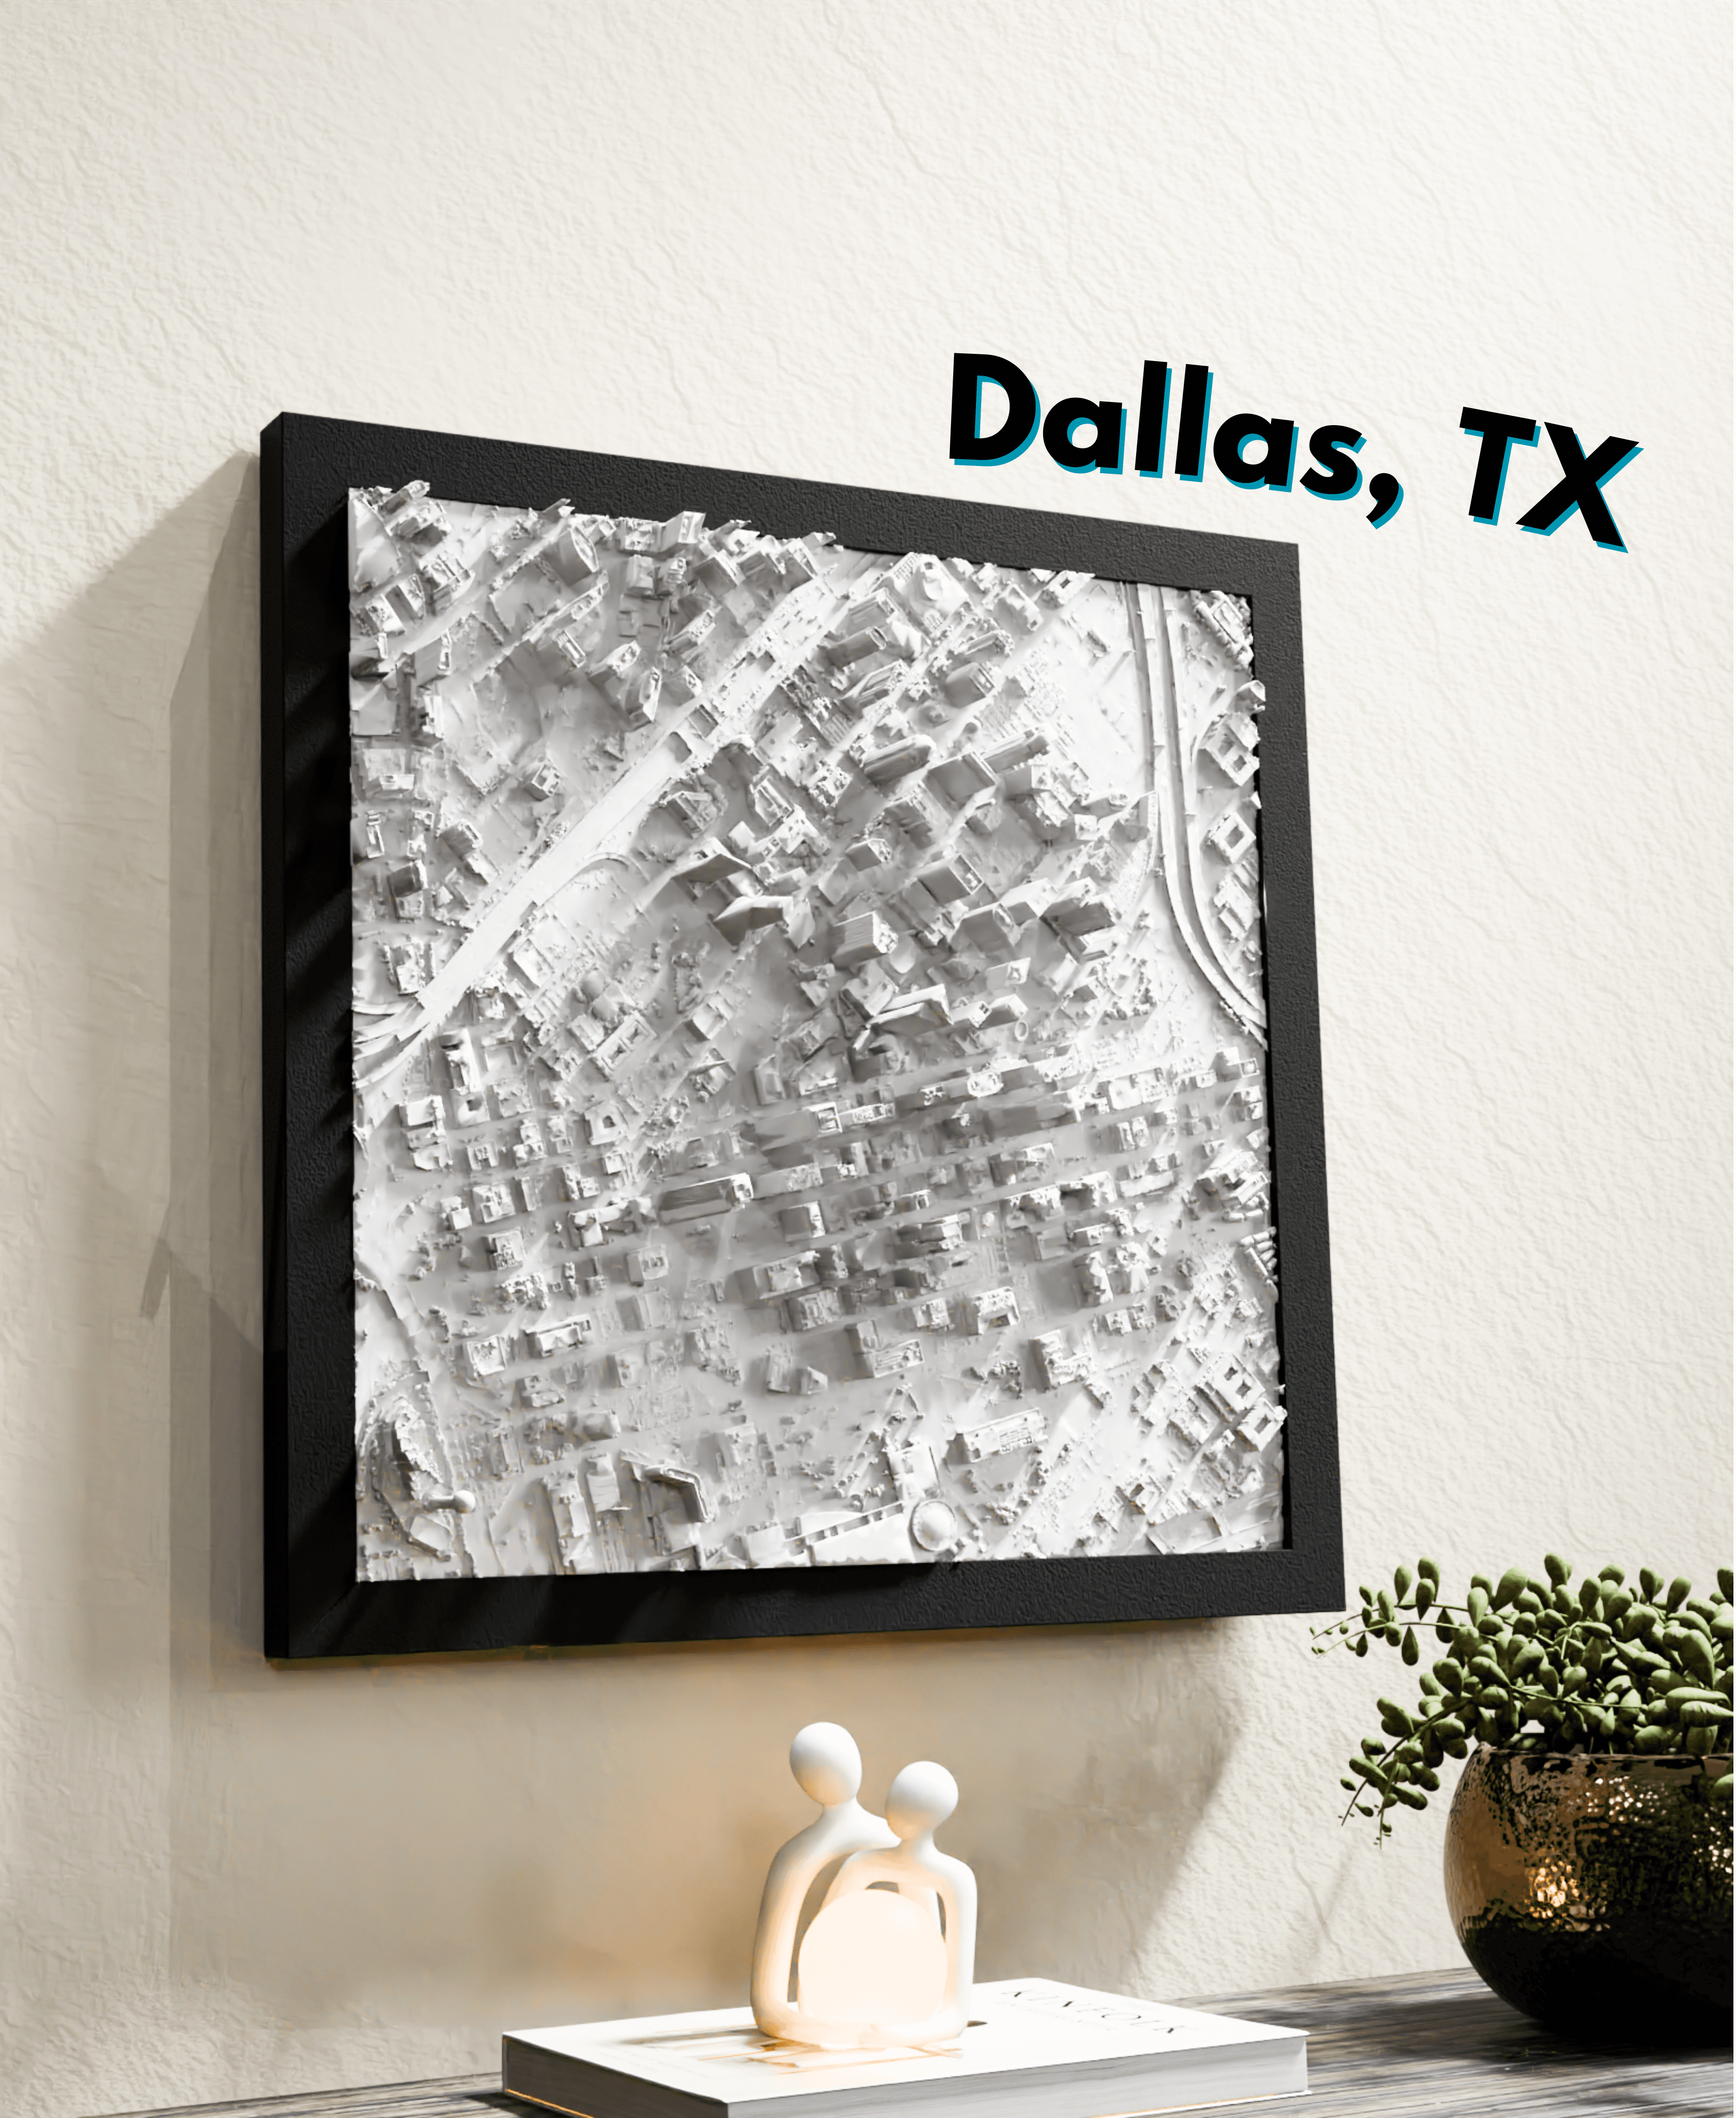 Dallas, TX_Solid.stl 3d model